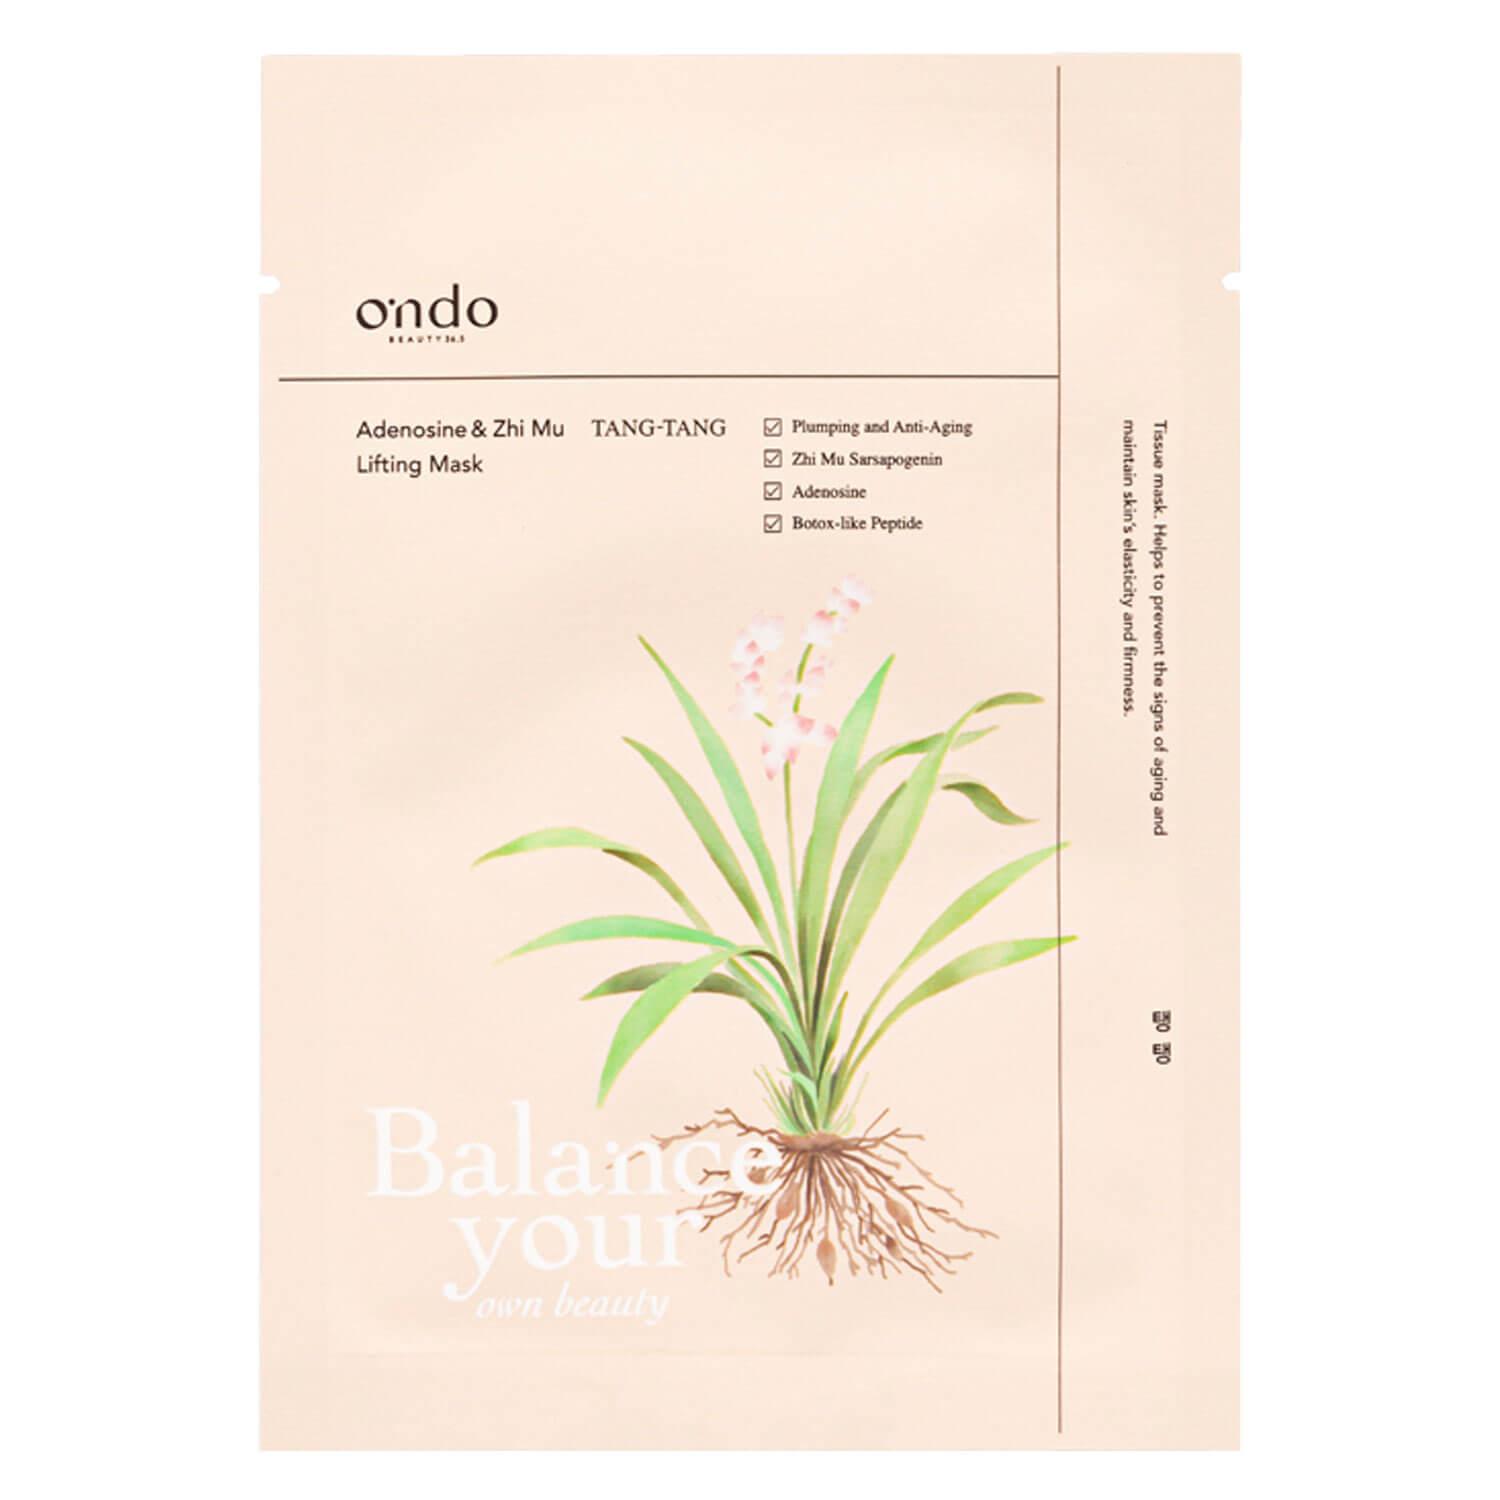 ondo Beauty 36.5 - Adenosine & Zhi Mu Lifting Mask